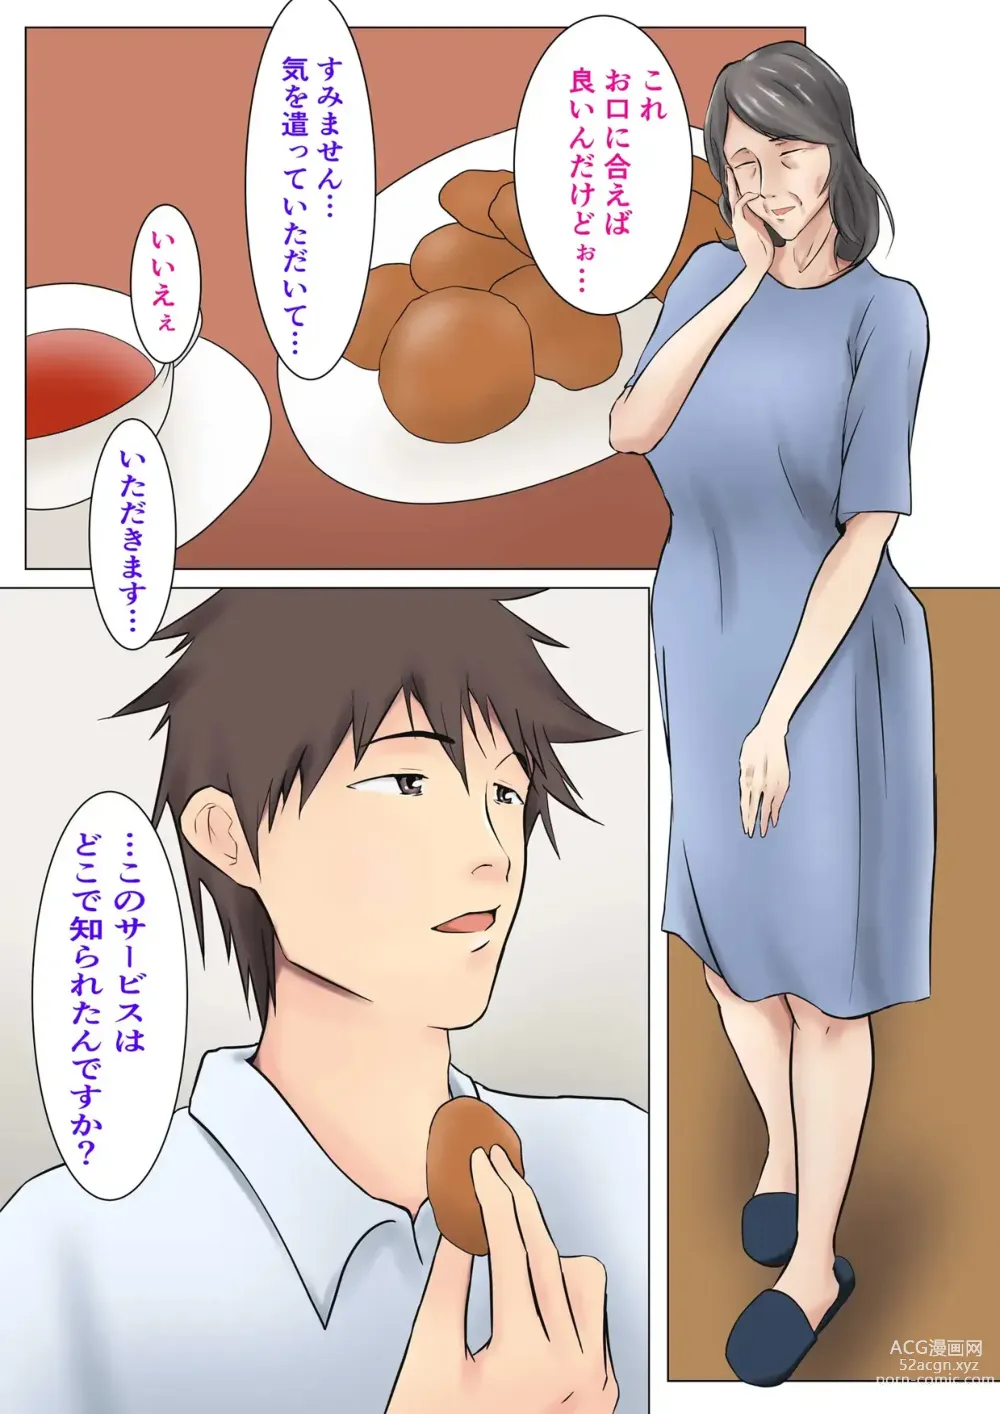 Page 3 of doujinshi Musoji kara Ukerareru Sei Service Delivery Helper